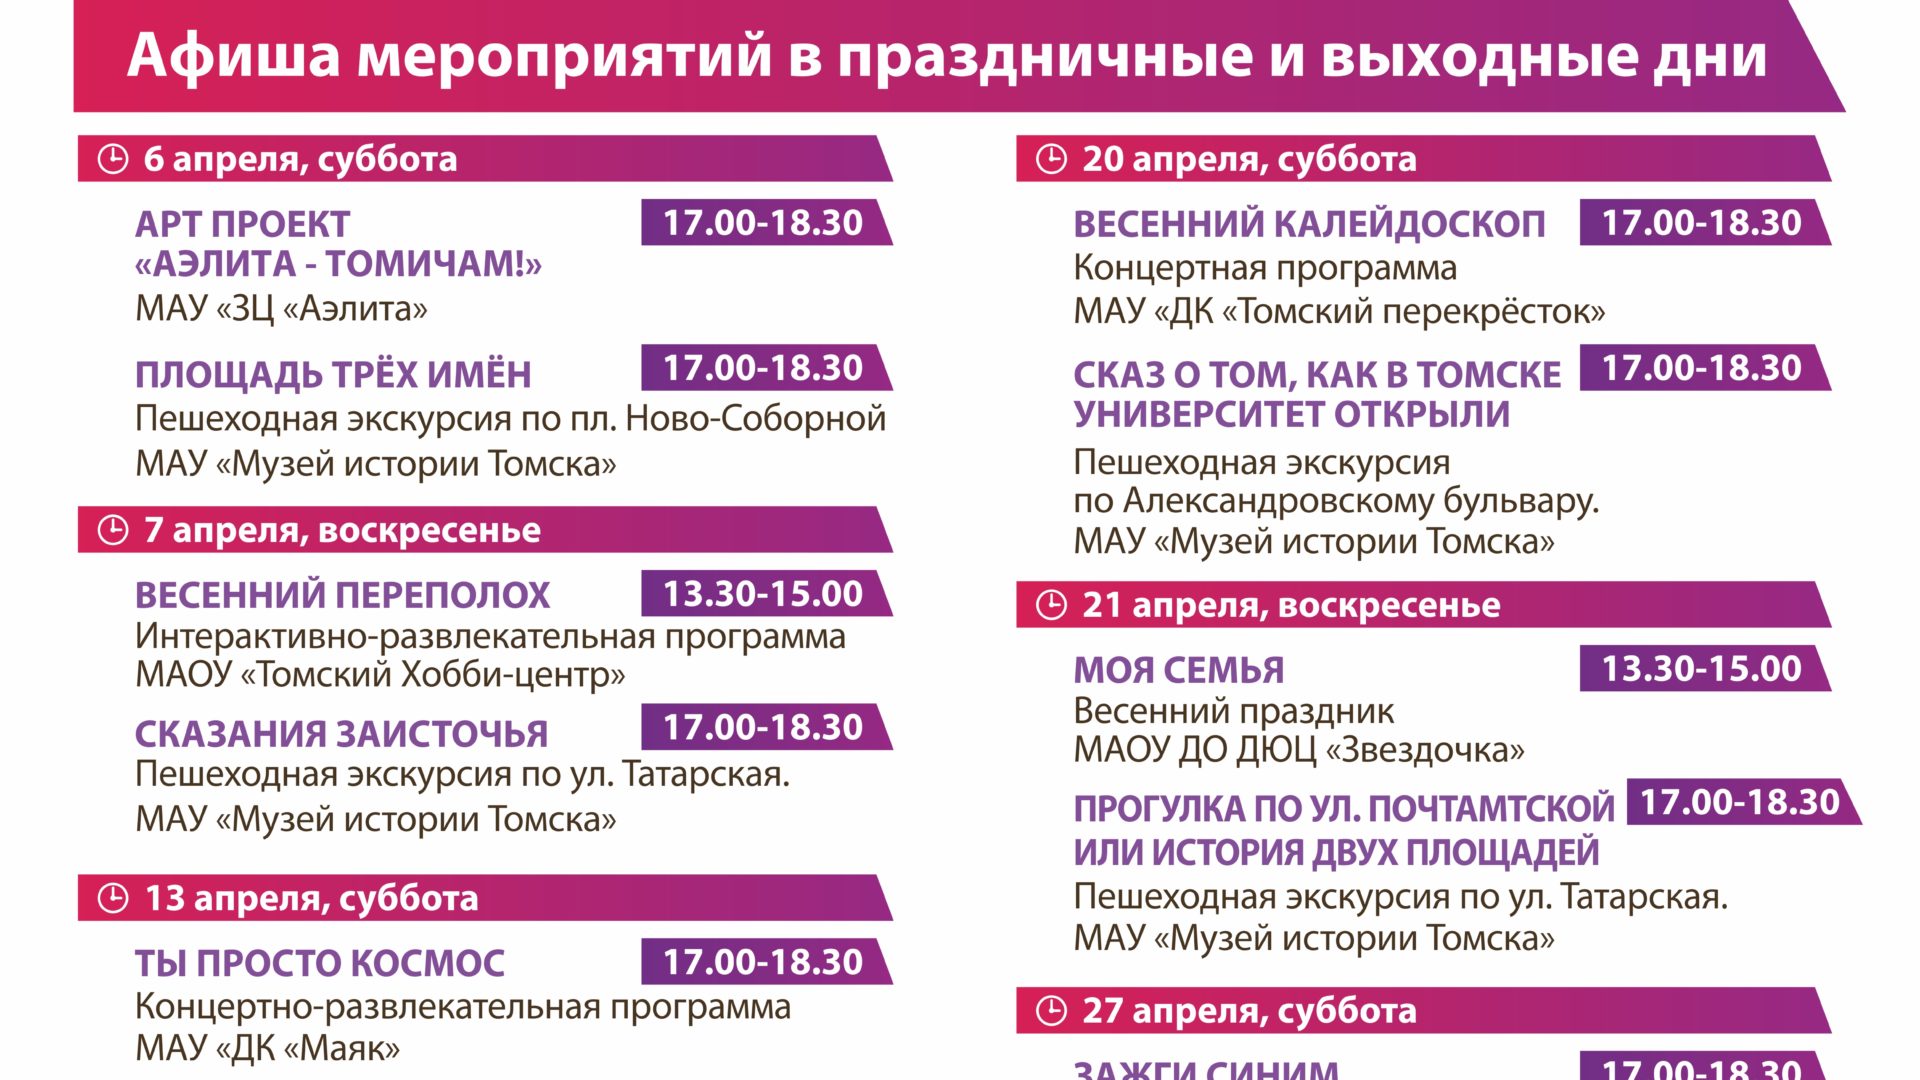 Афиша мероприятий на пл. Ново-Соборной на апрель